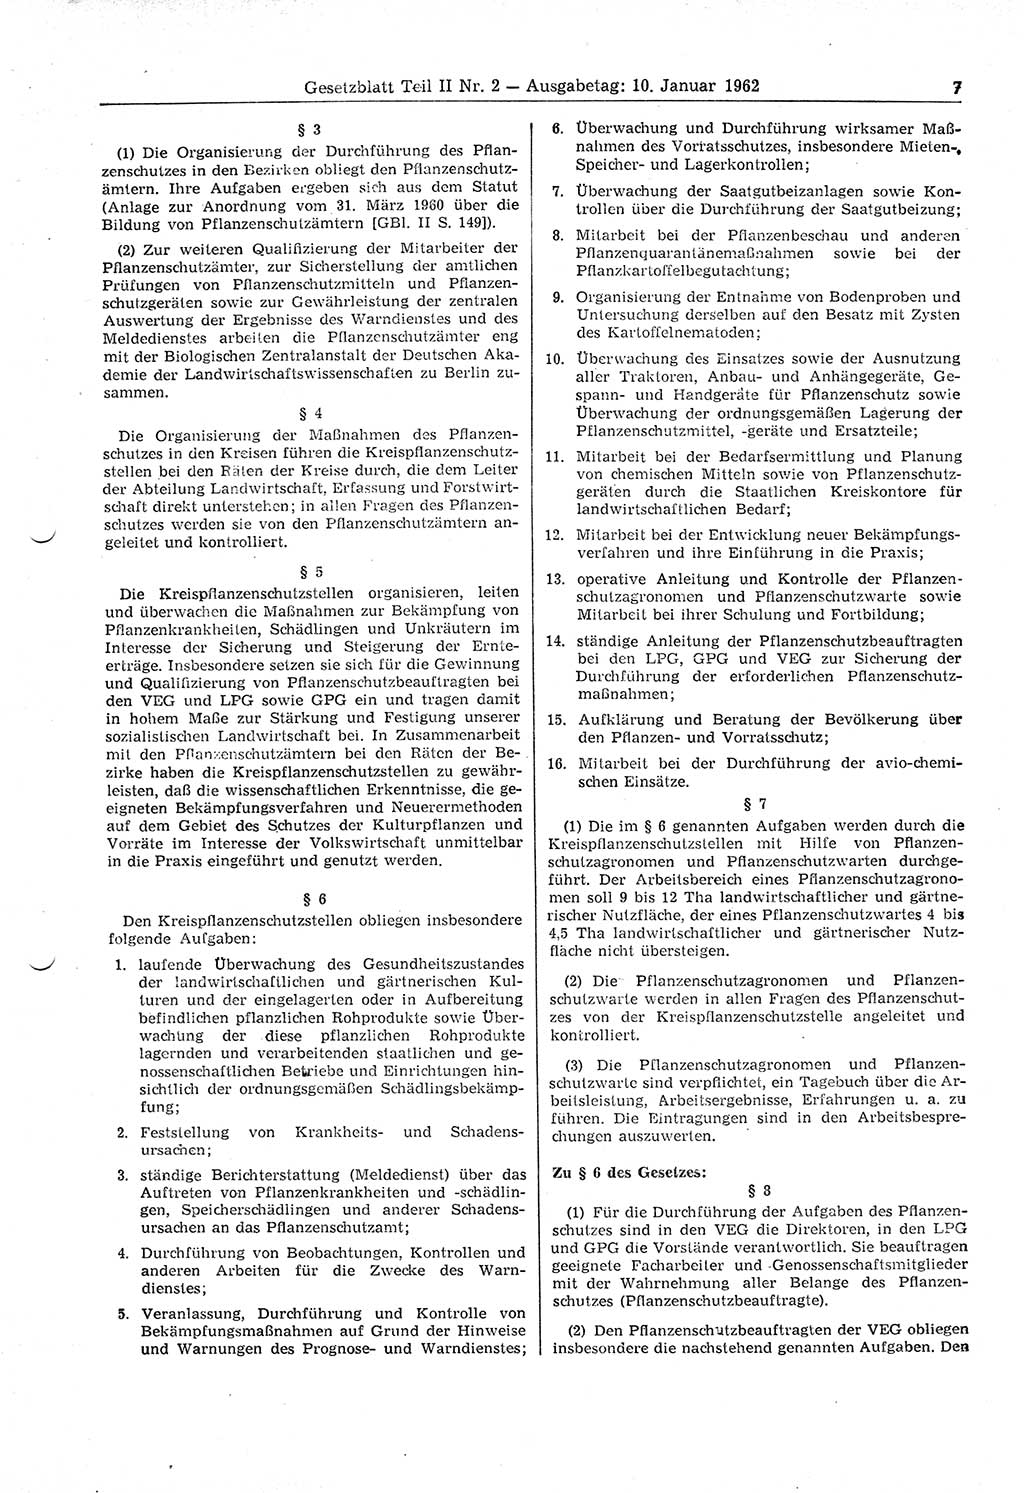 Gesetzblatt (GBl.) der Deutschen Demokratischen Republik (DDR) Teil ⅠⅠ 1962, Seite 7 (GBl. DDR ⅠⅠ 1962, S. 7)